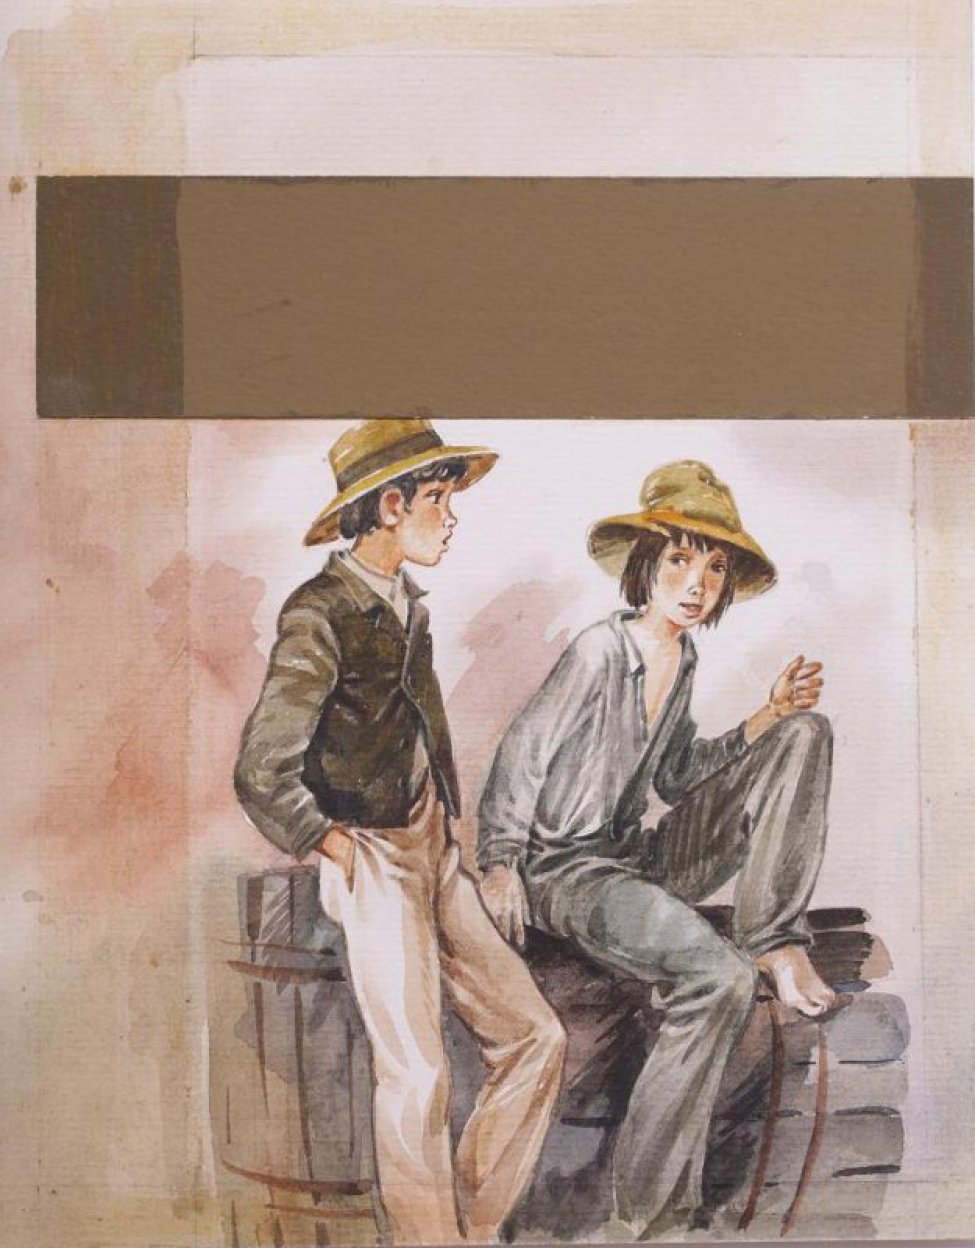 Изображены два мальчика - подростка. Один стоит положив руку в карман и прислоняясь к бочке, опрокинутой на бок. В верхней части композиции наклеена полоска бумаги 4,5х17 см. цвета хаки.